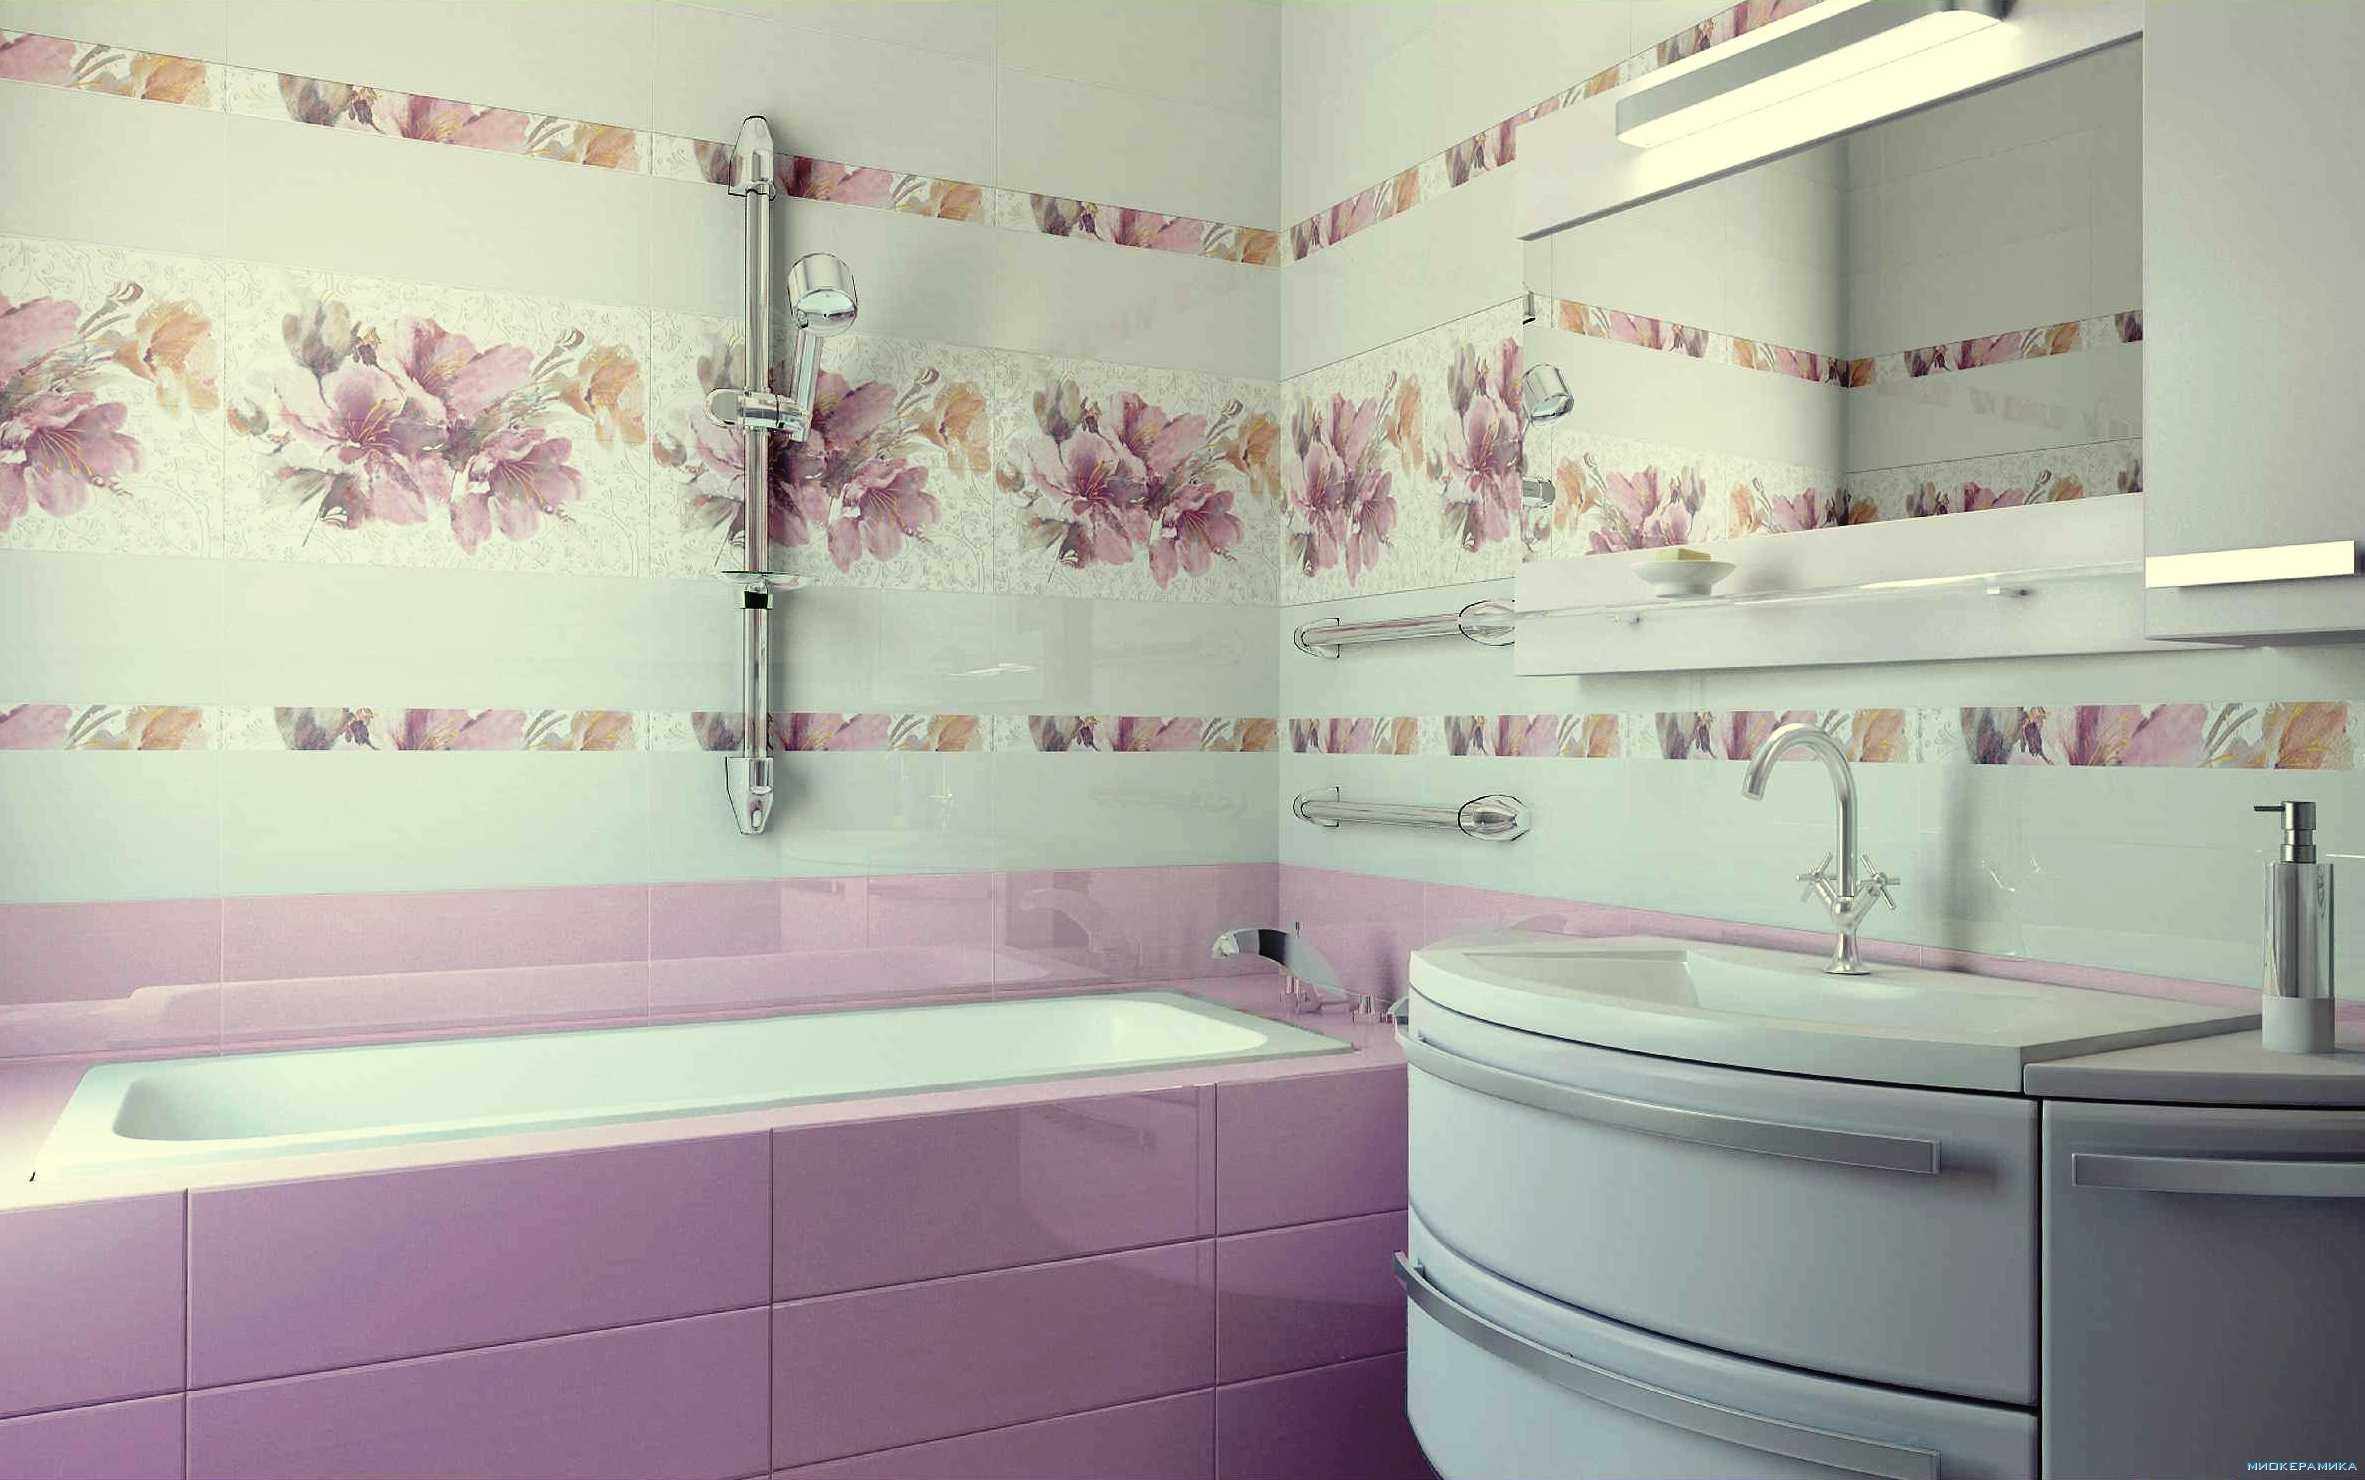 Parlak kiremitli banyo dekoruna bir örnek